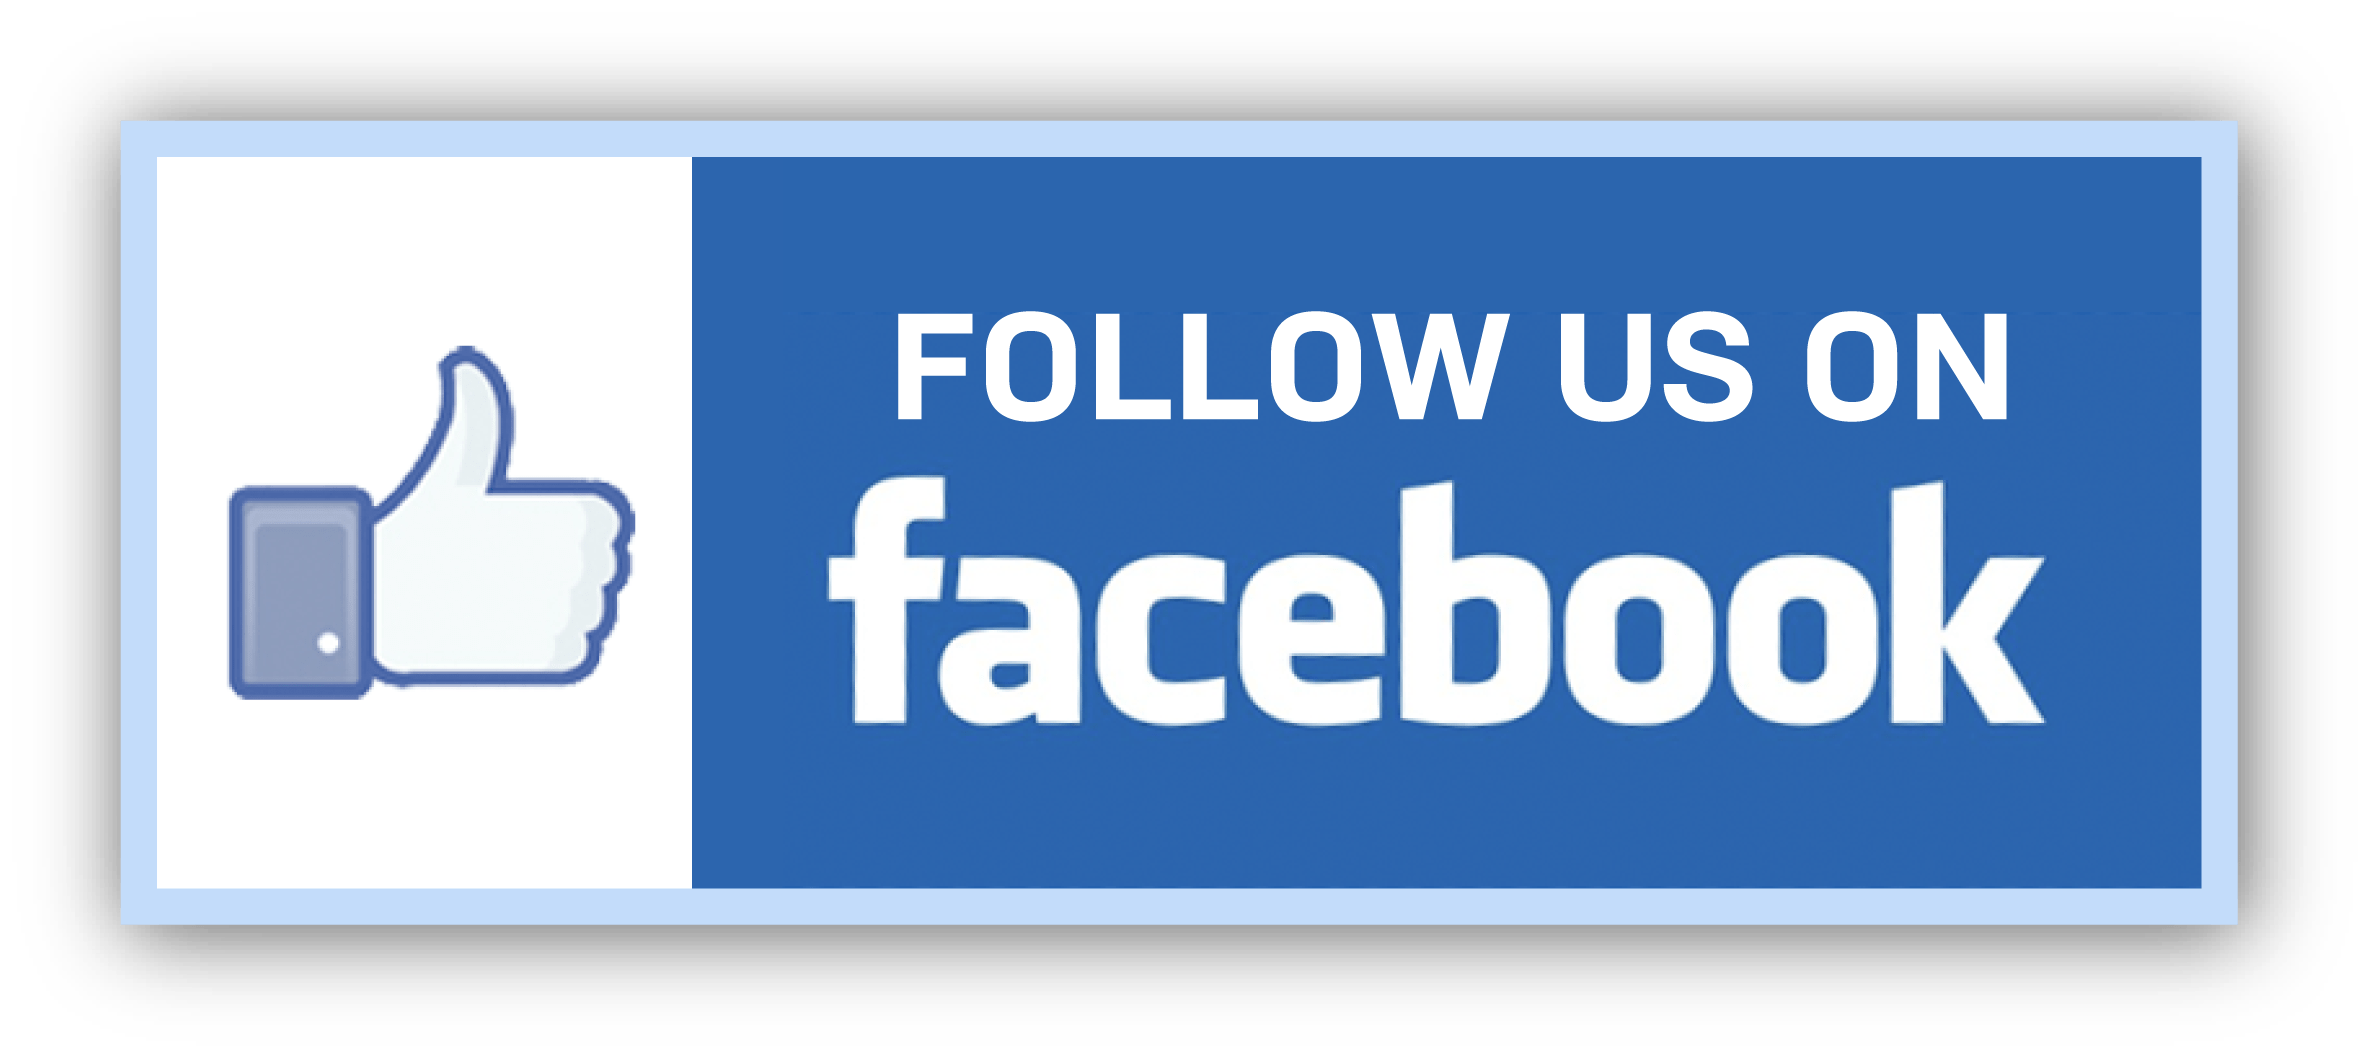 Find Us On Facebook and Instagram Logo - Social Media Icons transparent PNG images - StickPNG